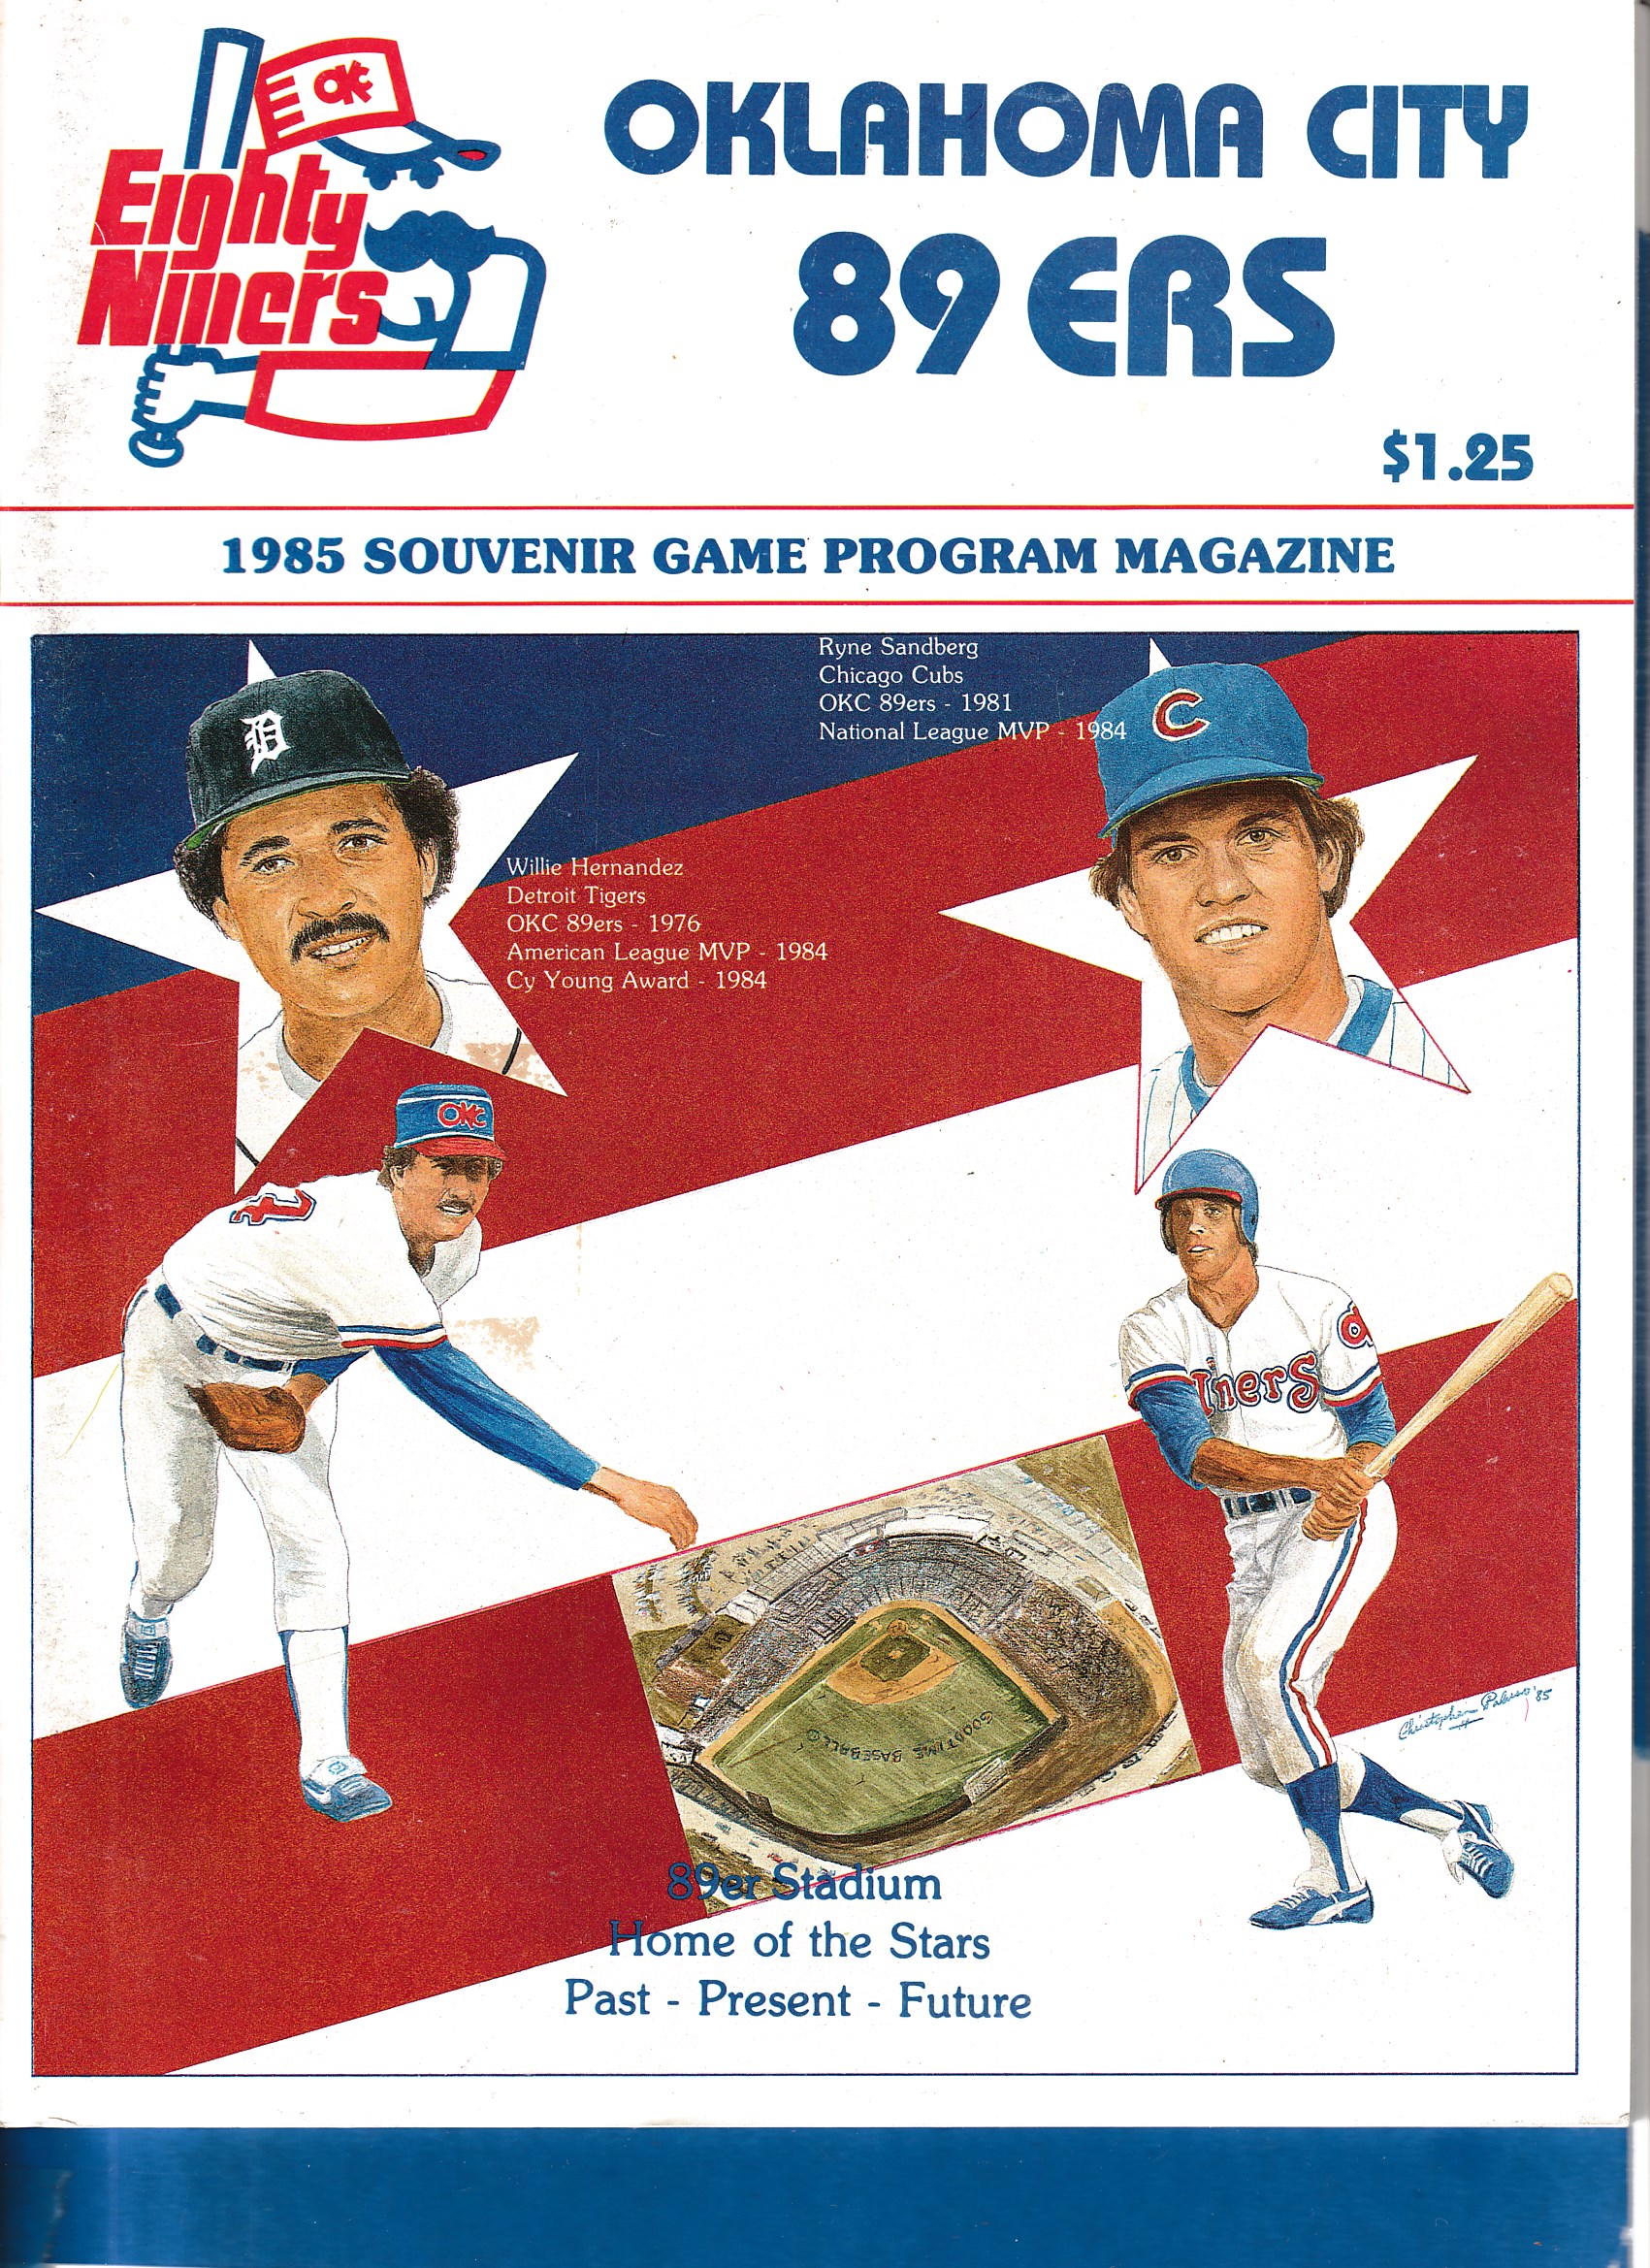  1985 Oklahoma City 89ers Program & Magazine - Ryne Sandberg cover (Cubs) Baseball cards value